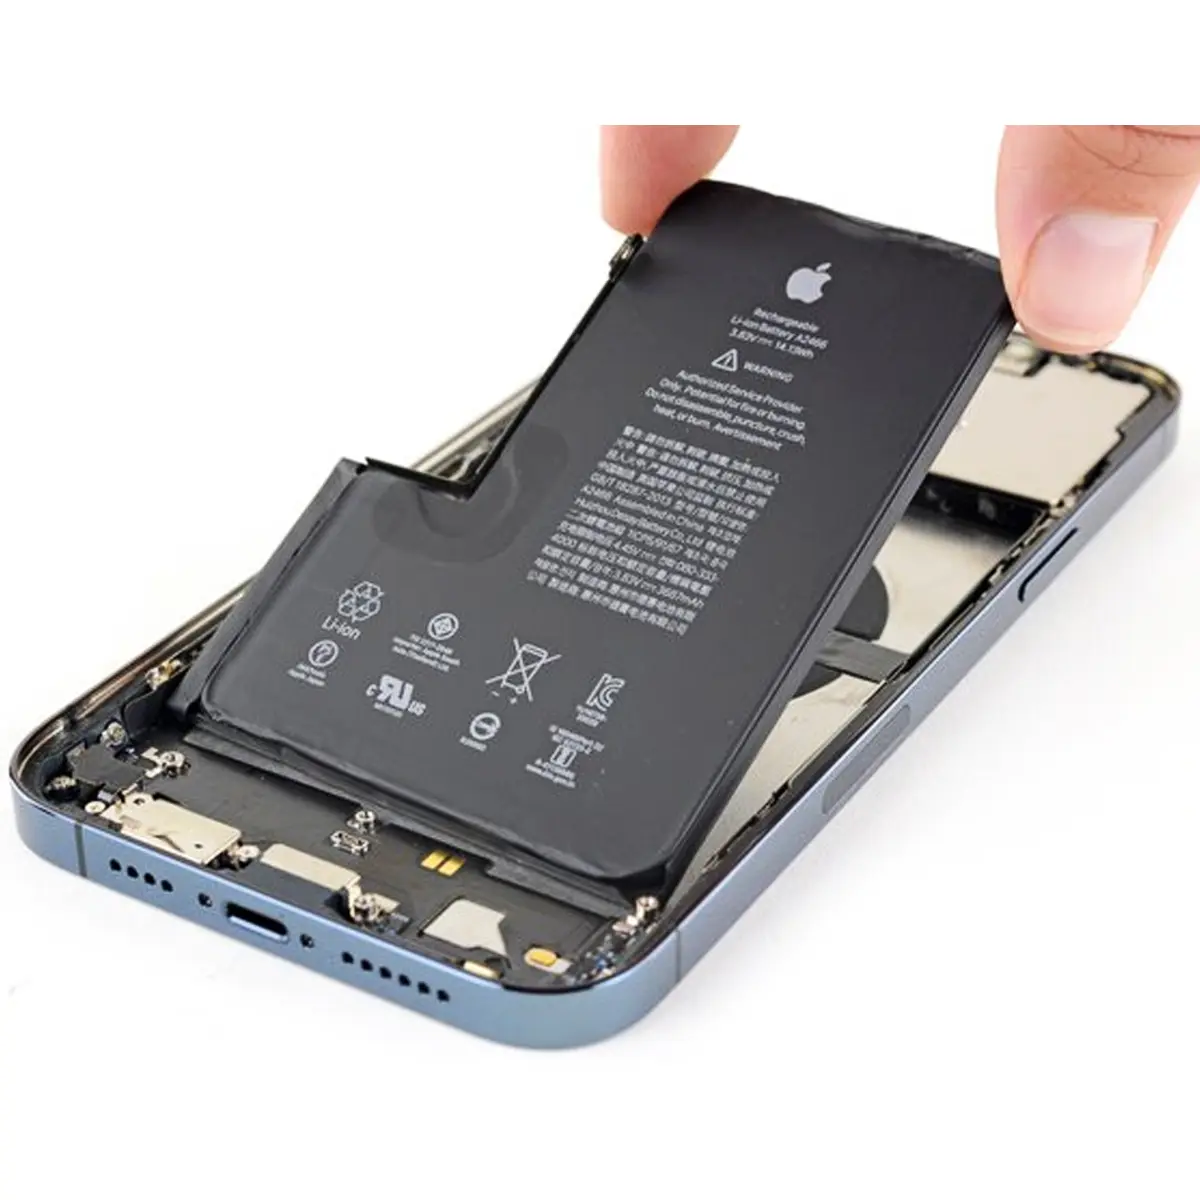 cambio de bateria iphone peru - Cuánto cuesta cambiar la batería de un iPhone 11 Perú